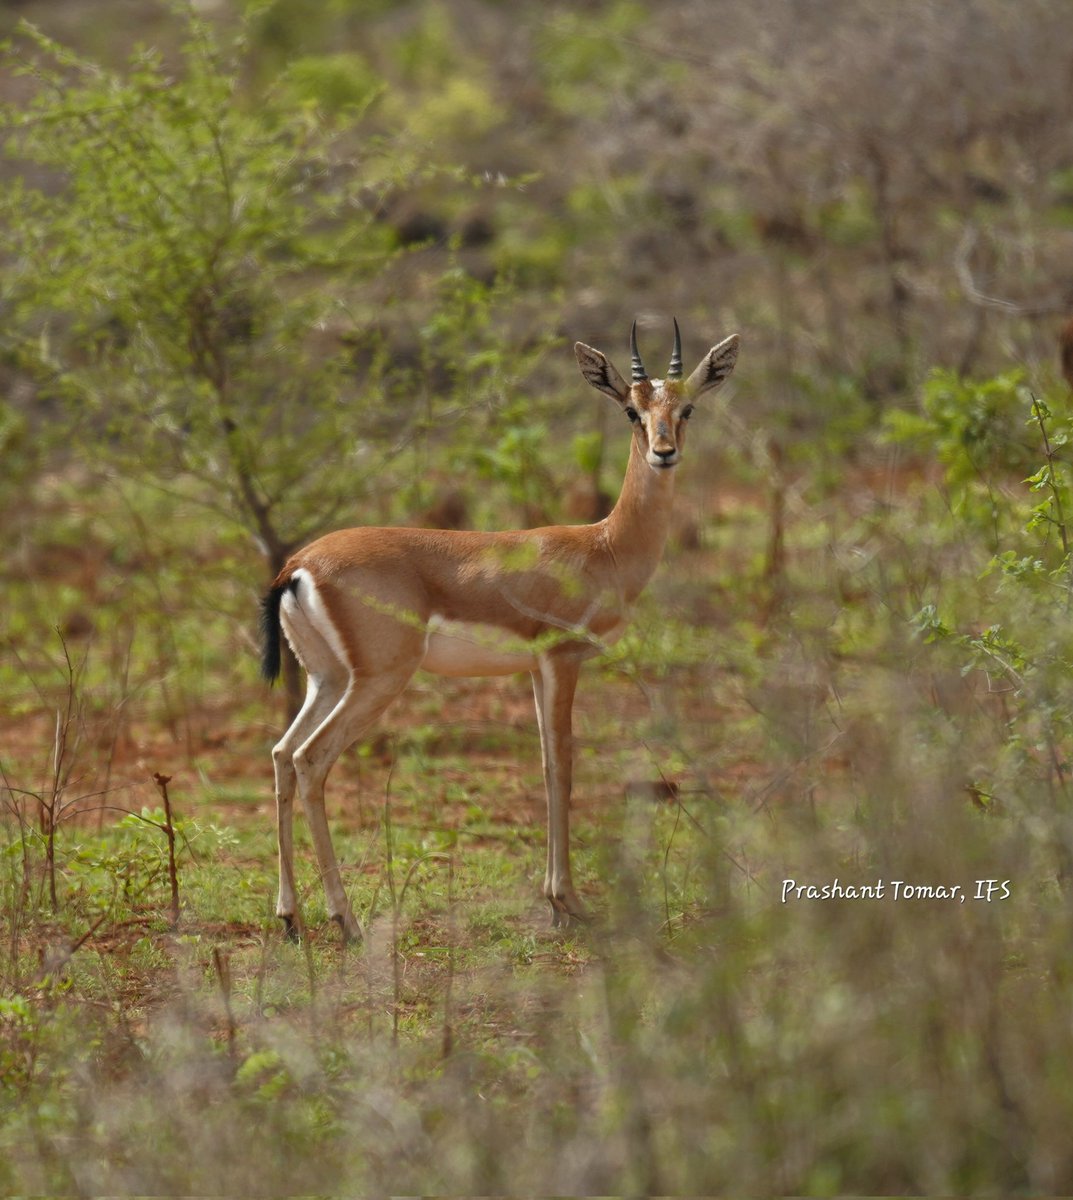 Graceful #chinkara #Indiangazelle #Girforest